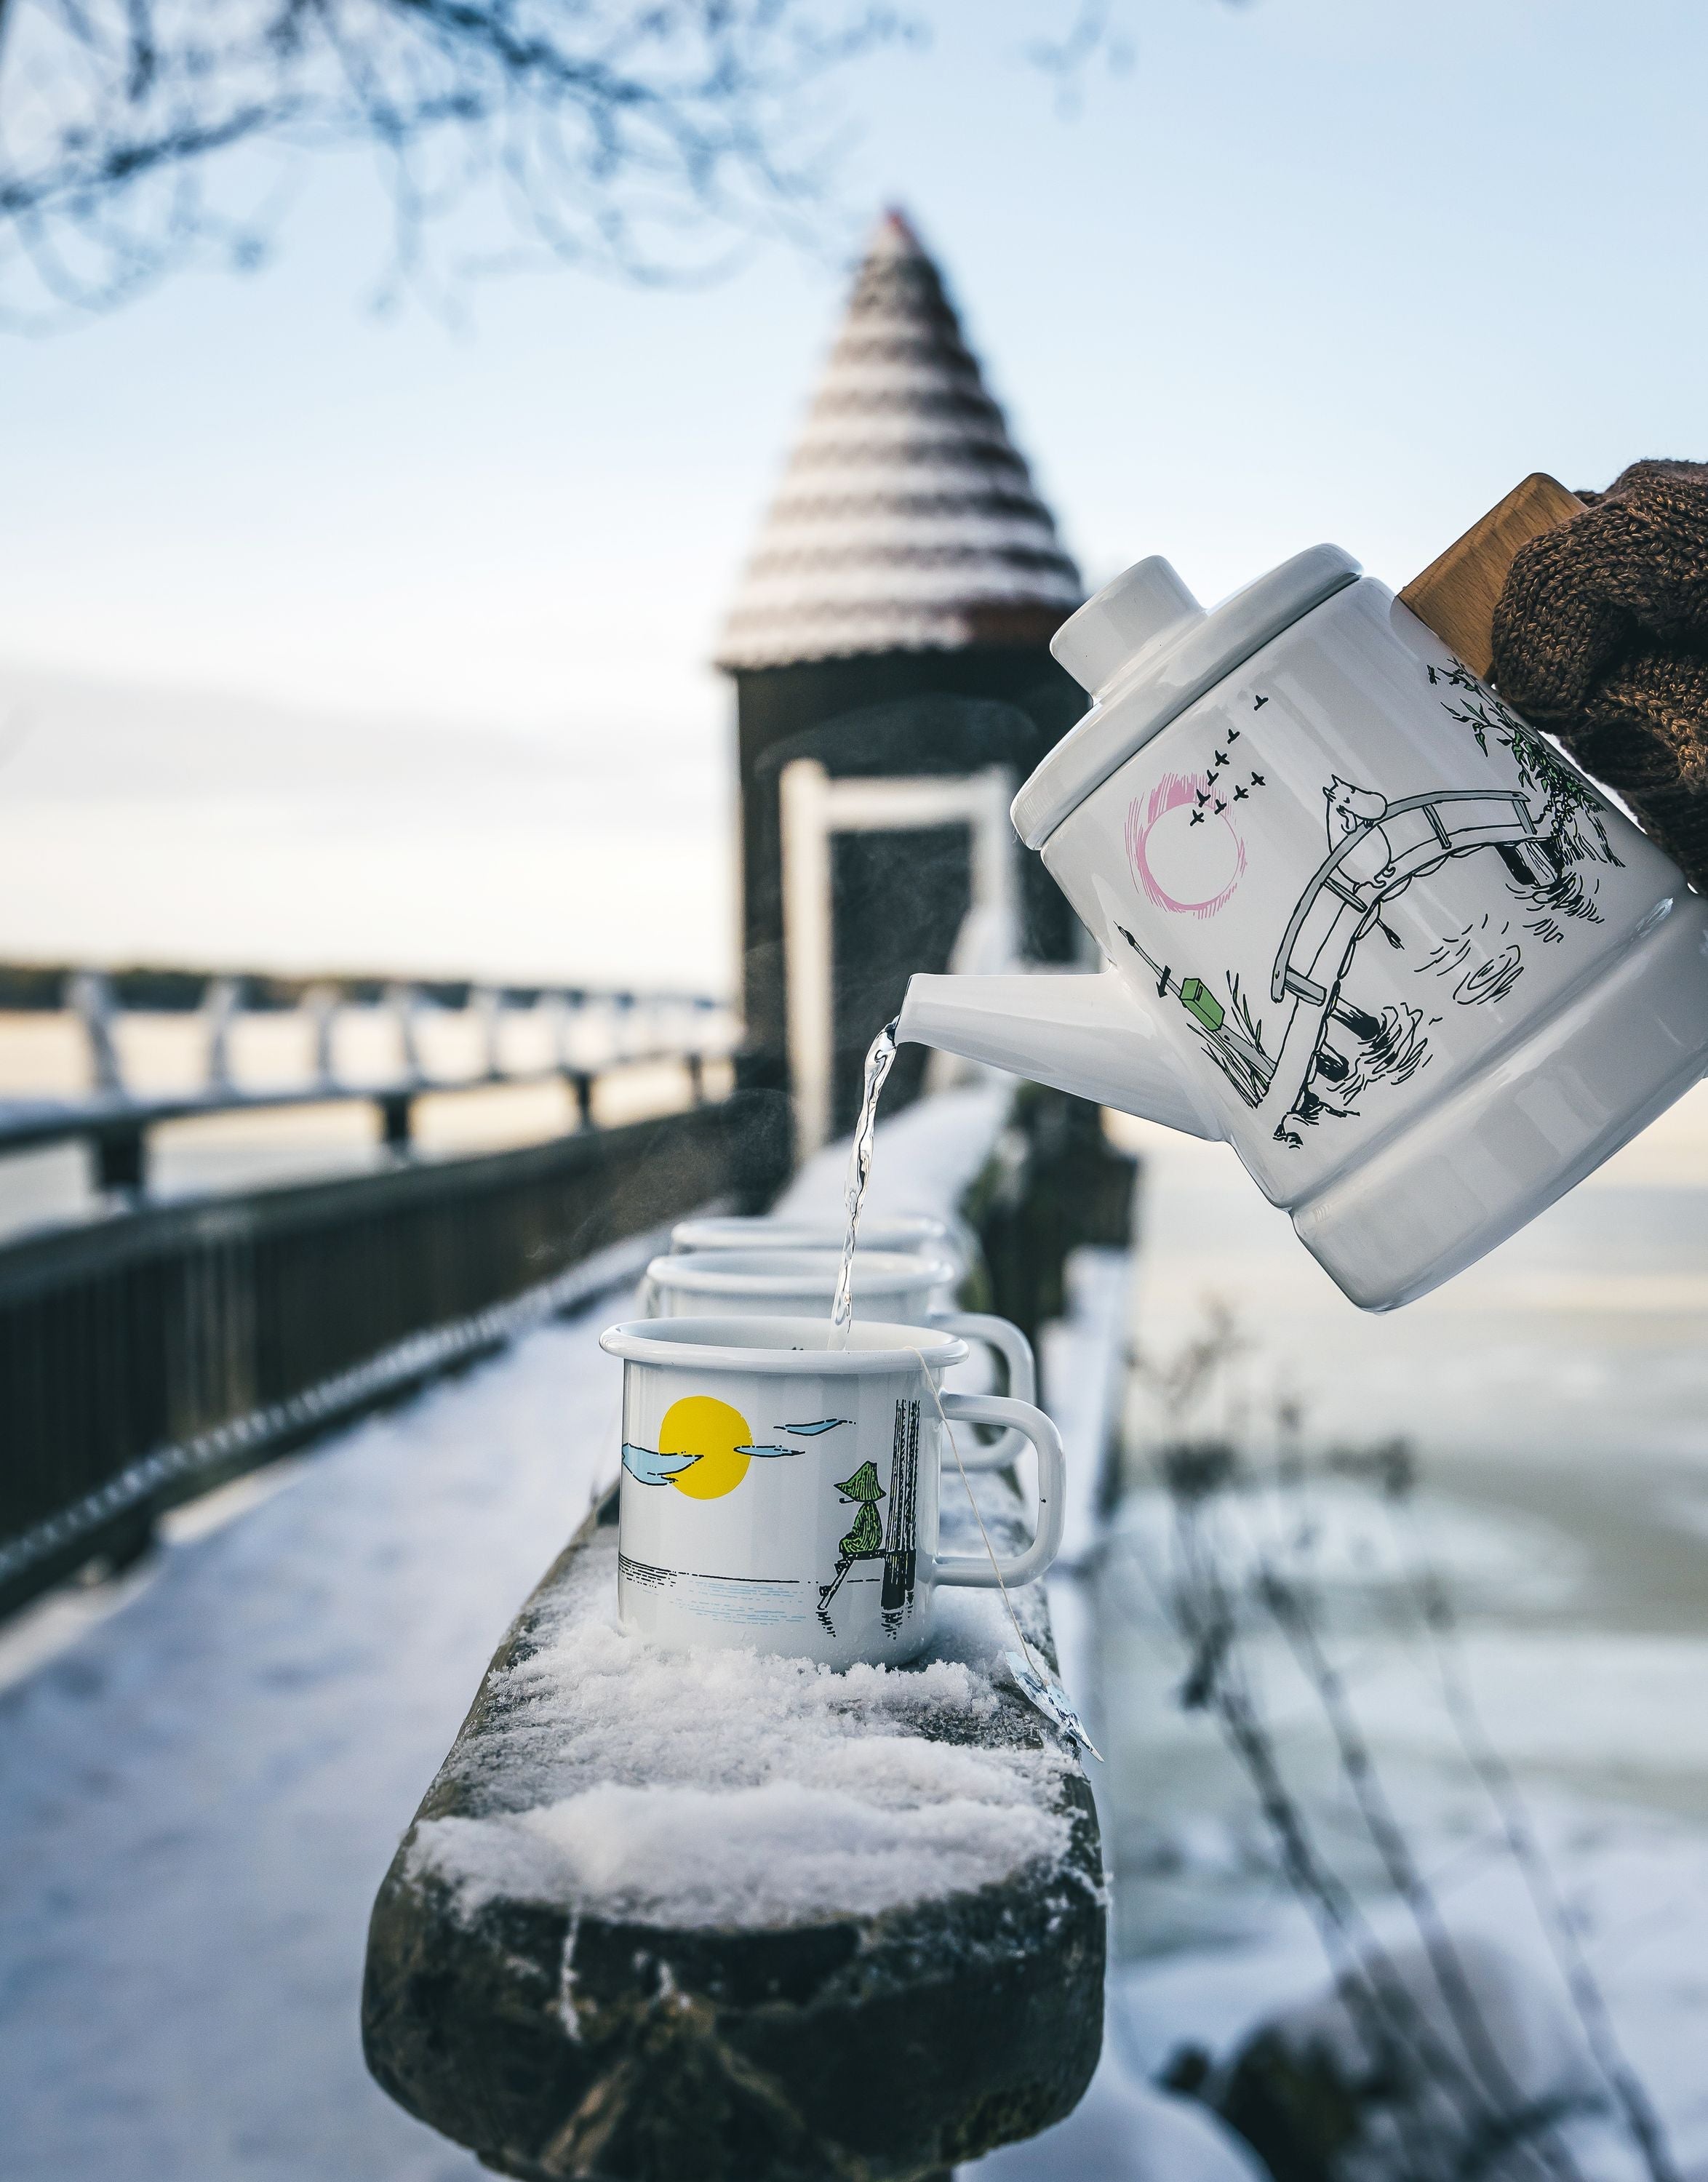 Muurla Moomin Originals enamel kaffi pott sakna þín